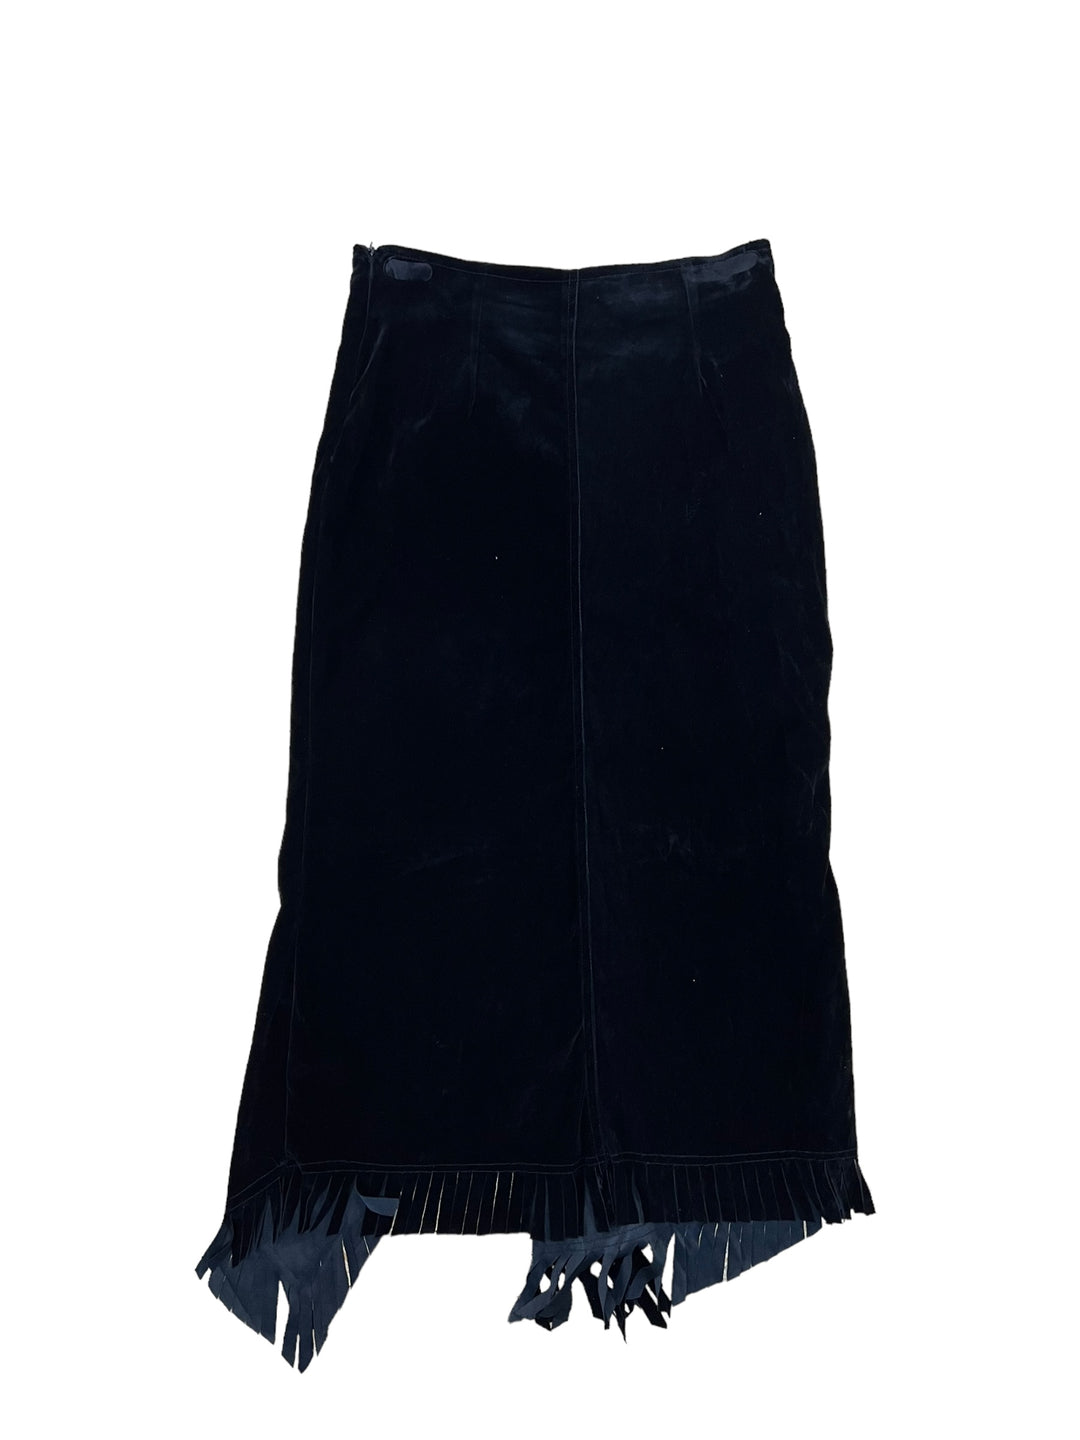 Vintage velour fringed skirt women’s small